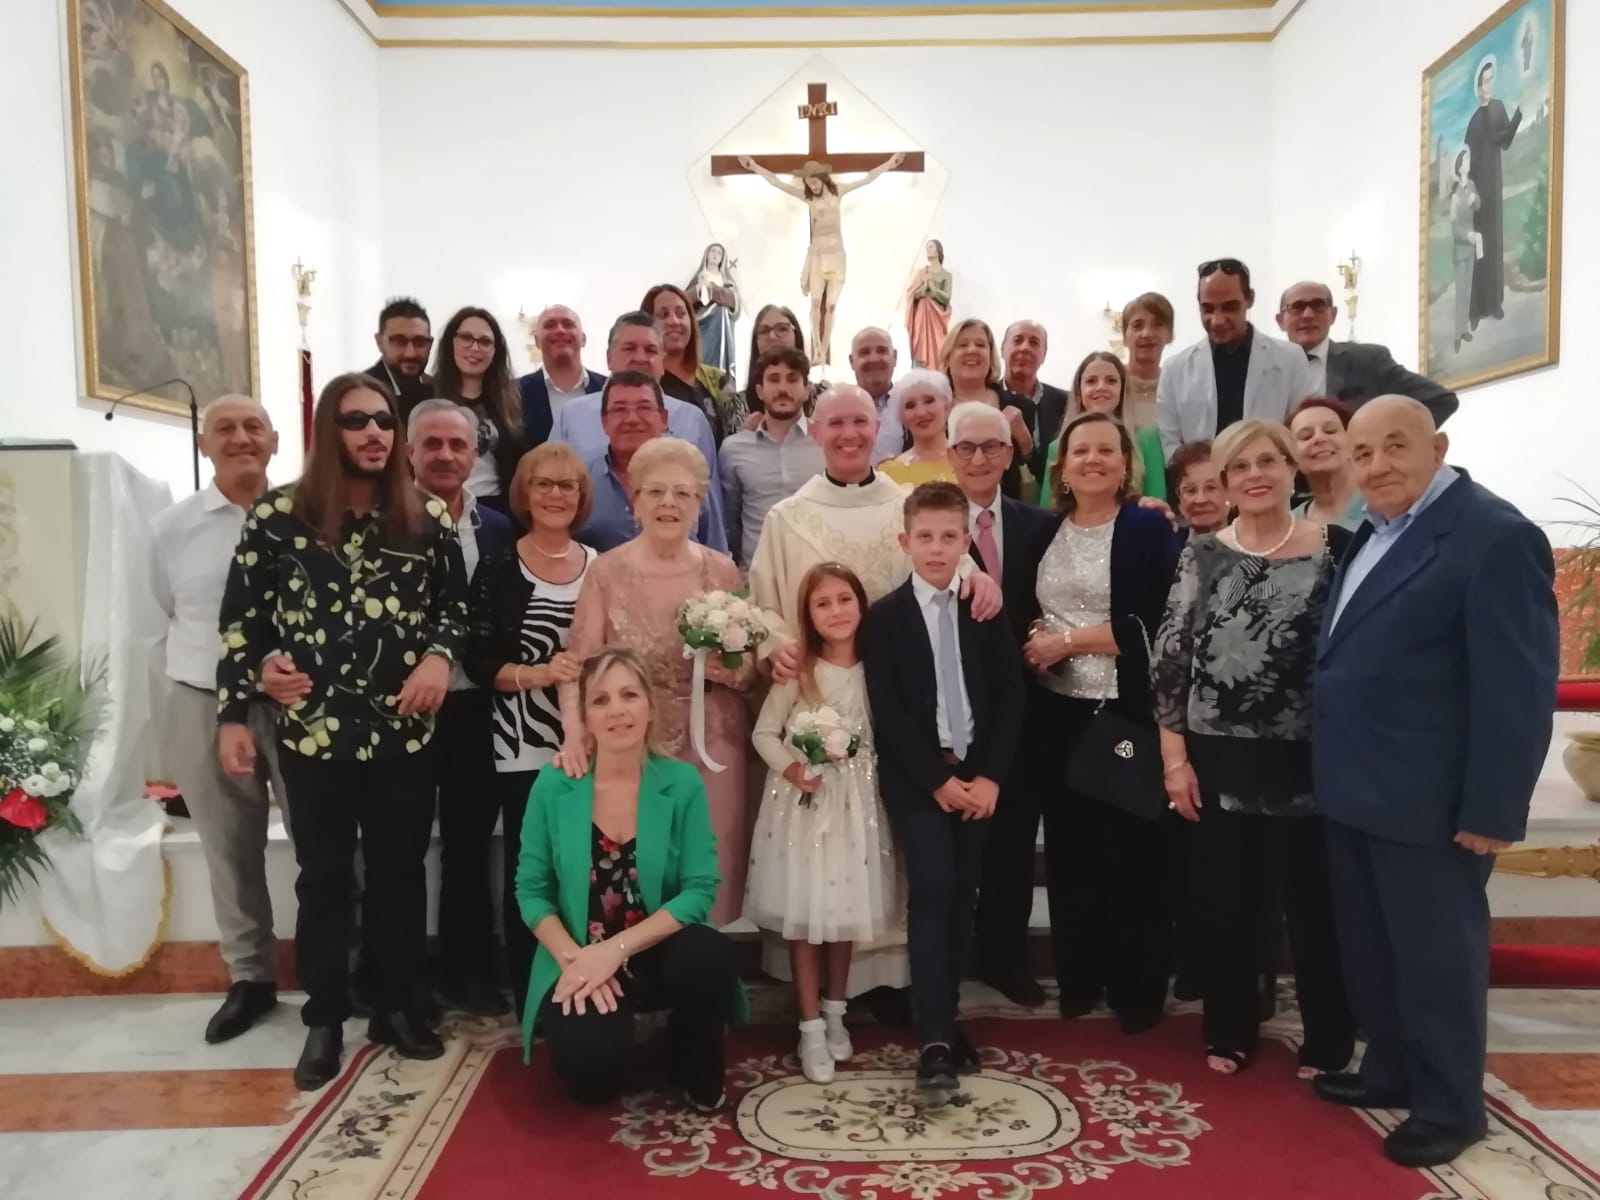 Settembre in festa a Bompensiere, tra attività ludico-culturali e anniversari di nozze